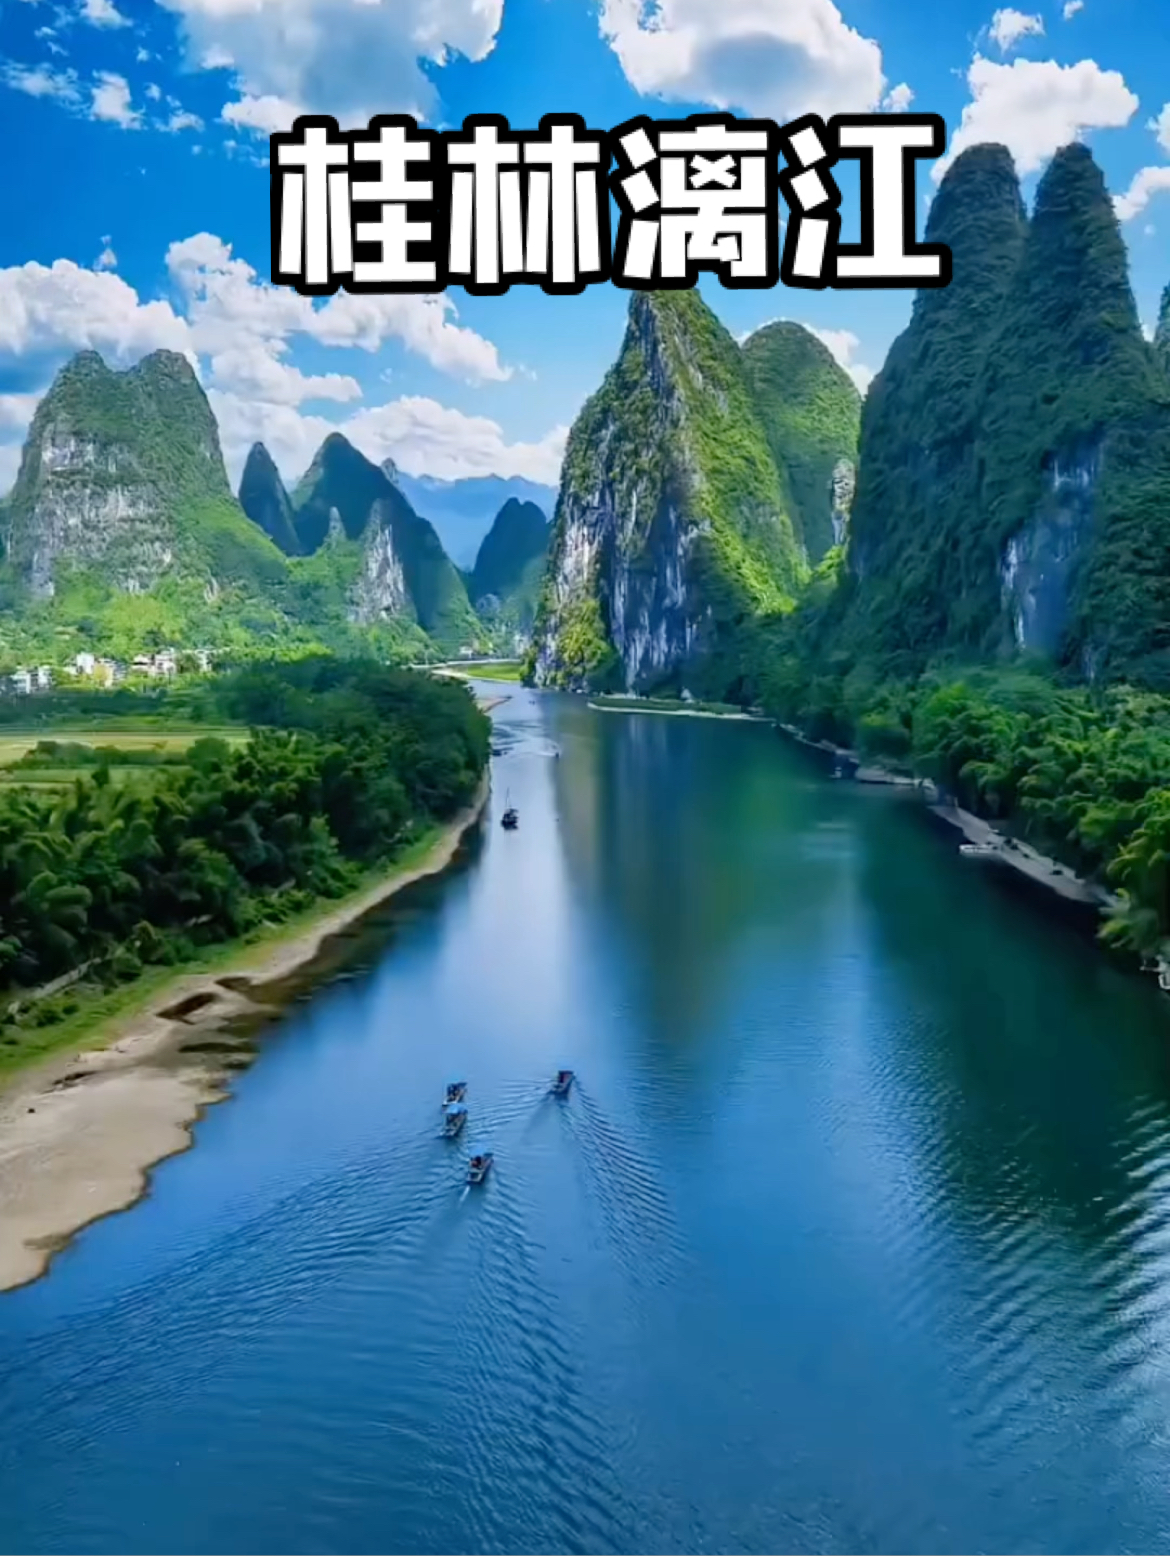 总要去一趟广西桂林吧，看看桂林山水，纵情山水间，心游尘世外，船在水中游，人在画中走，山水有相逢，终会